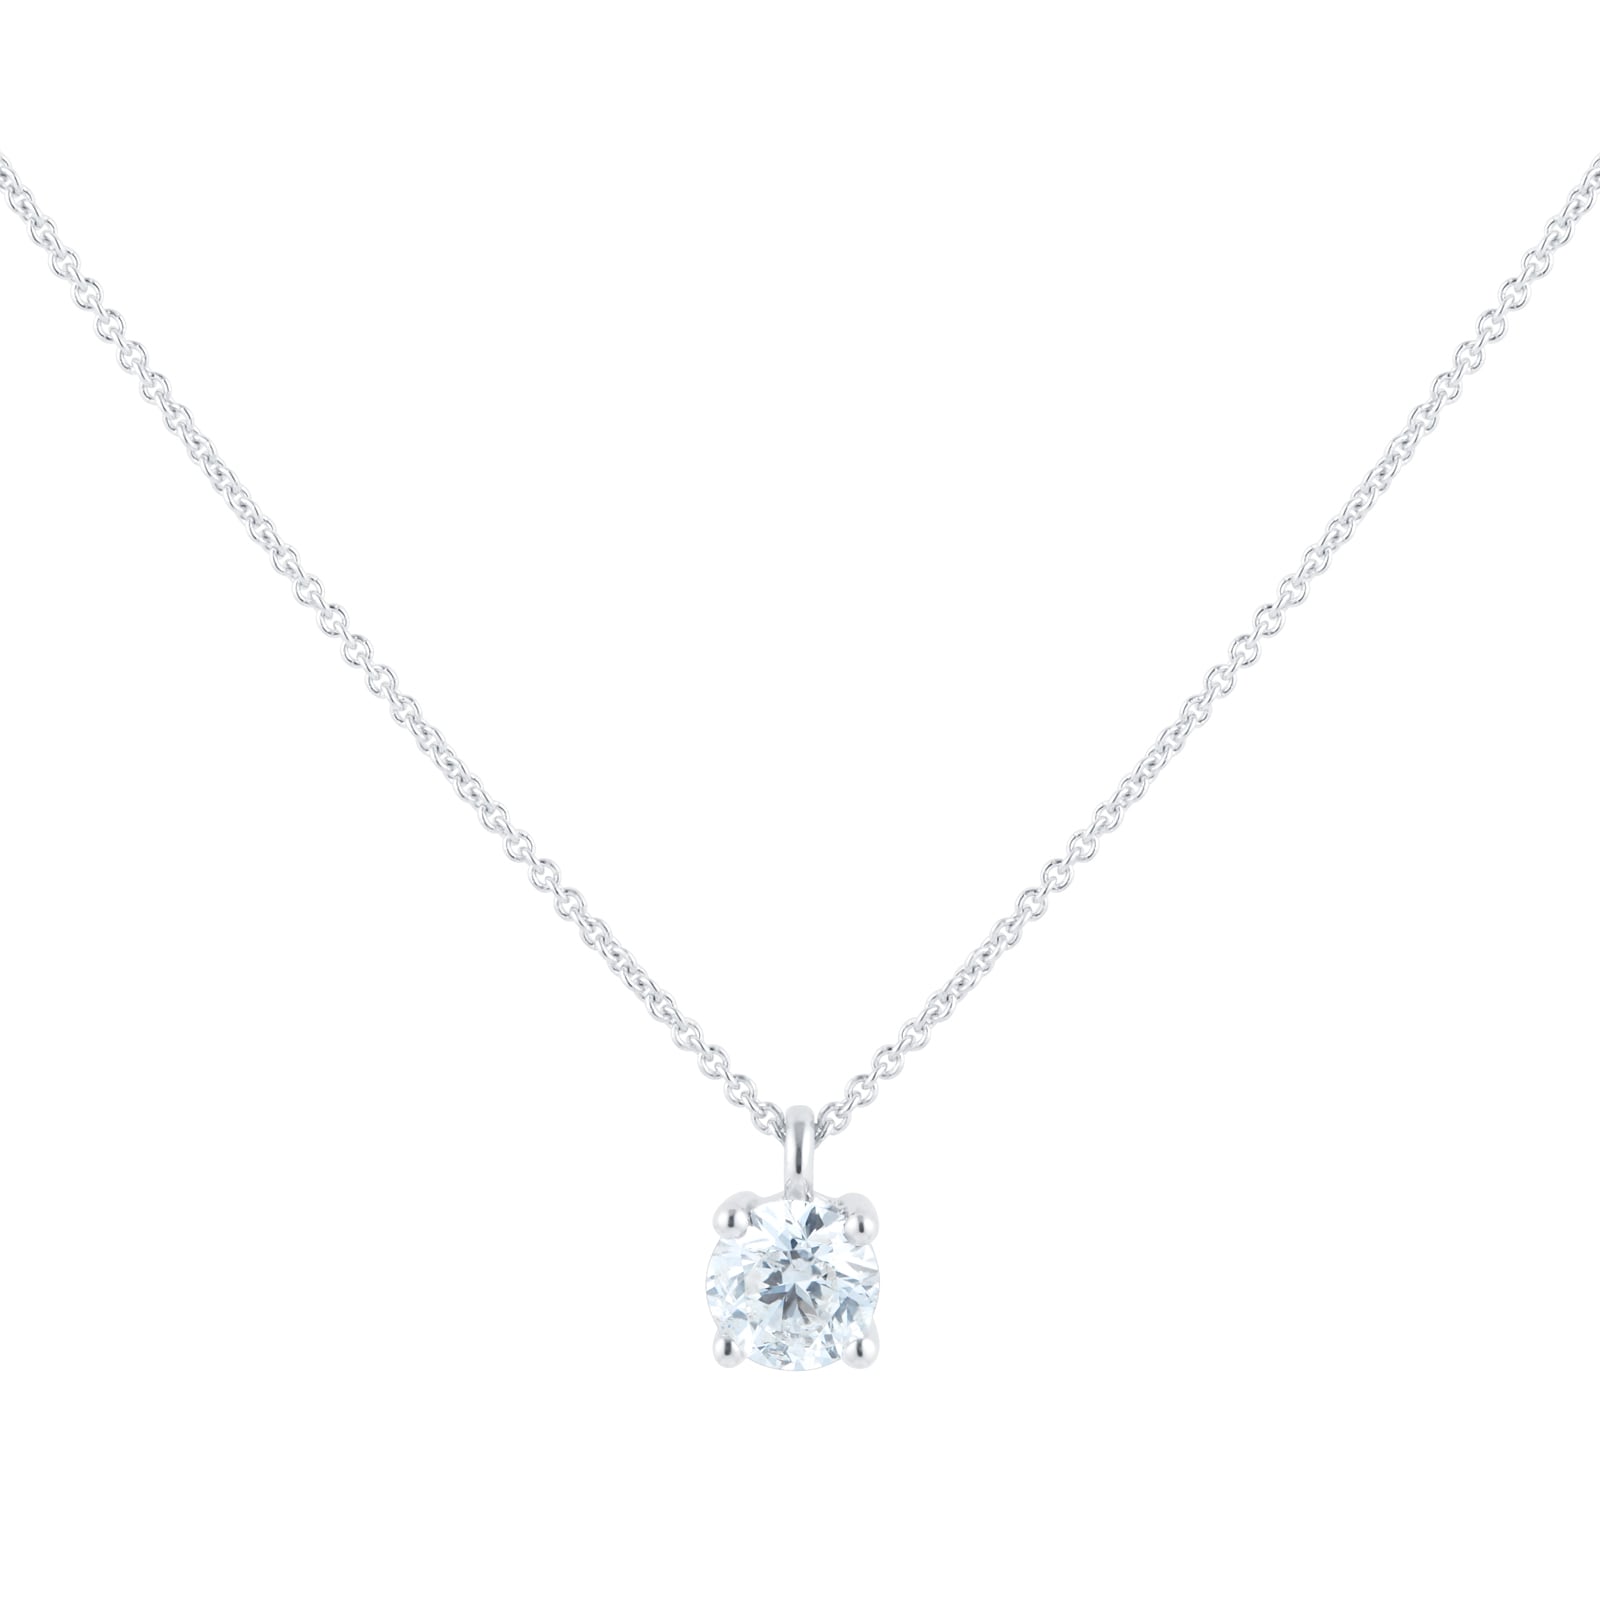 18ct white gold aquamarine & diamond pendant